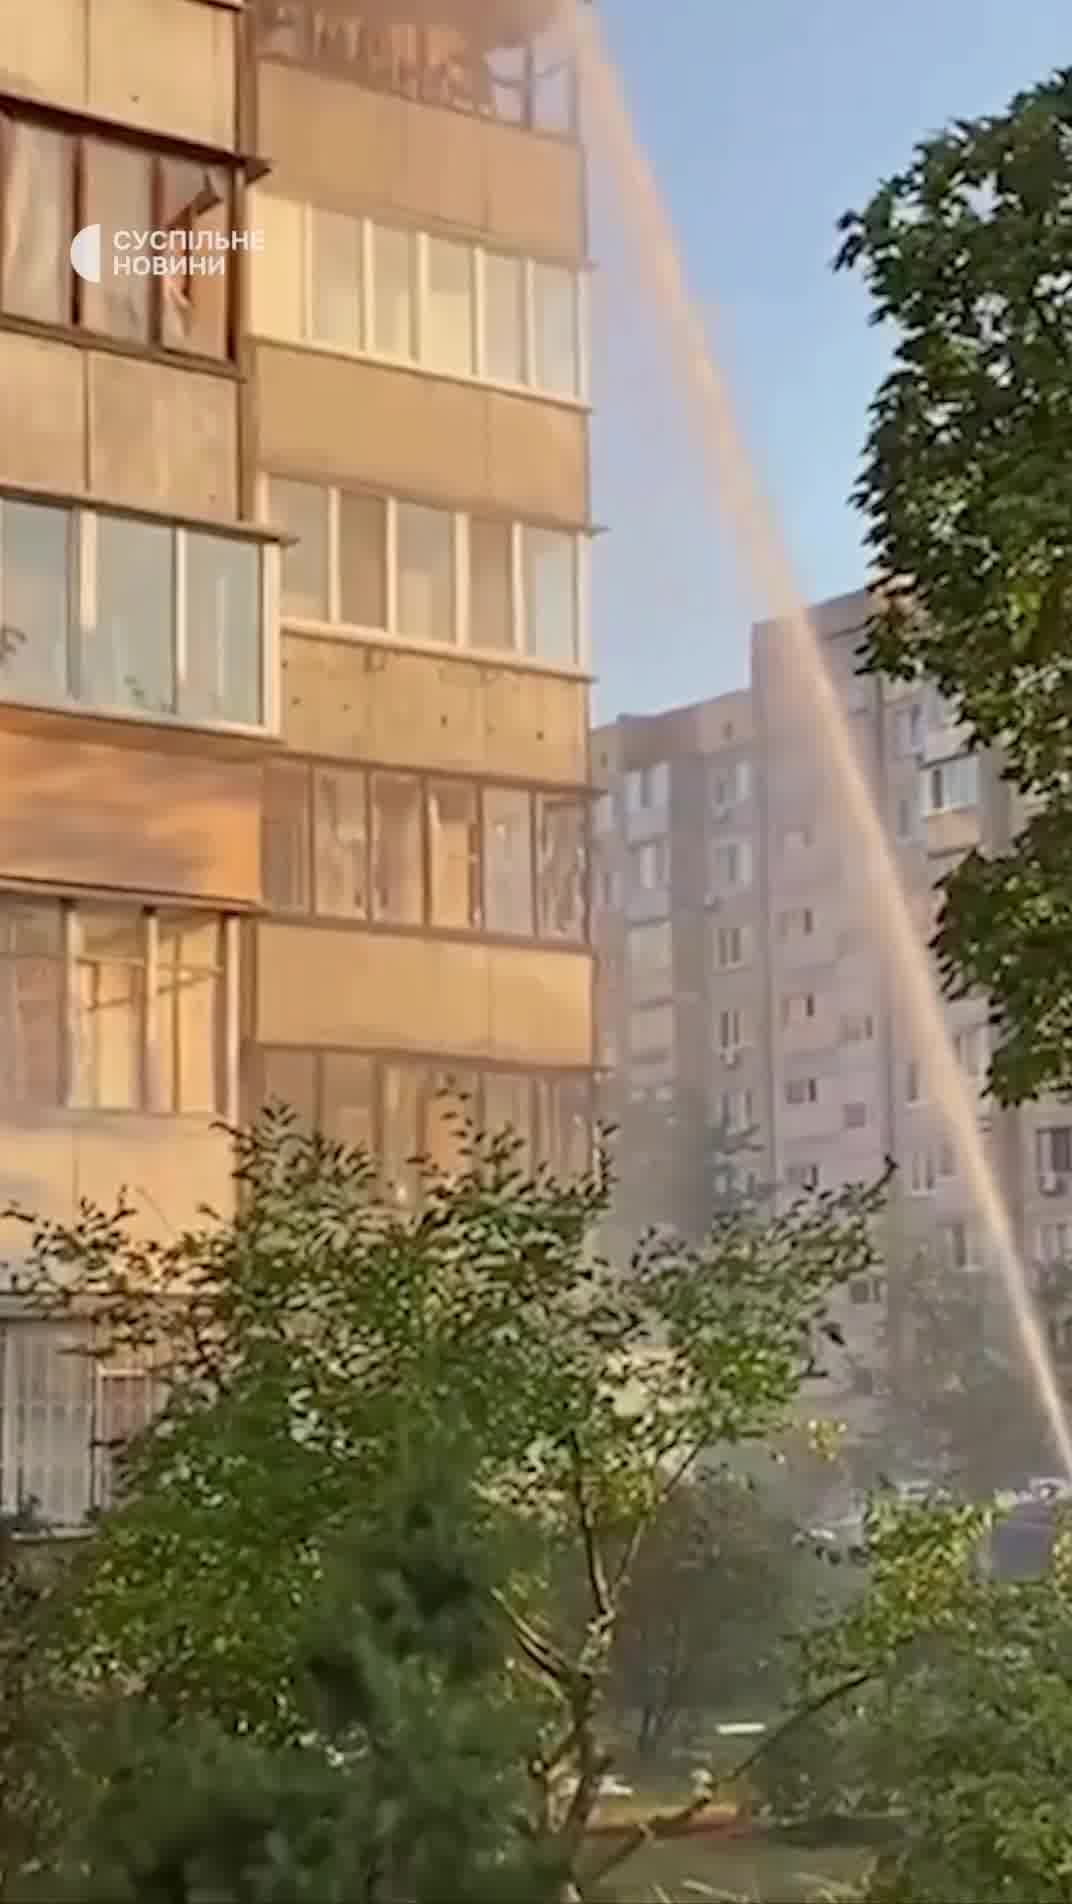 Clădire rezidențială avariată ca urmare a loviturii cu rachete rusești în districtul Obolonsky din Kyiv